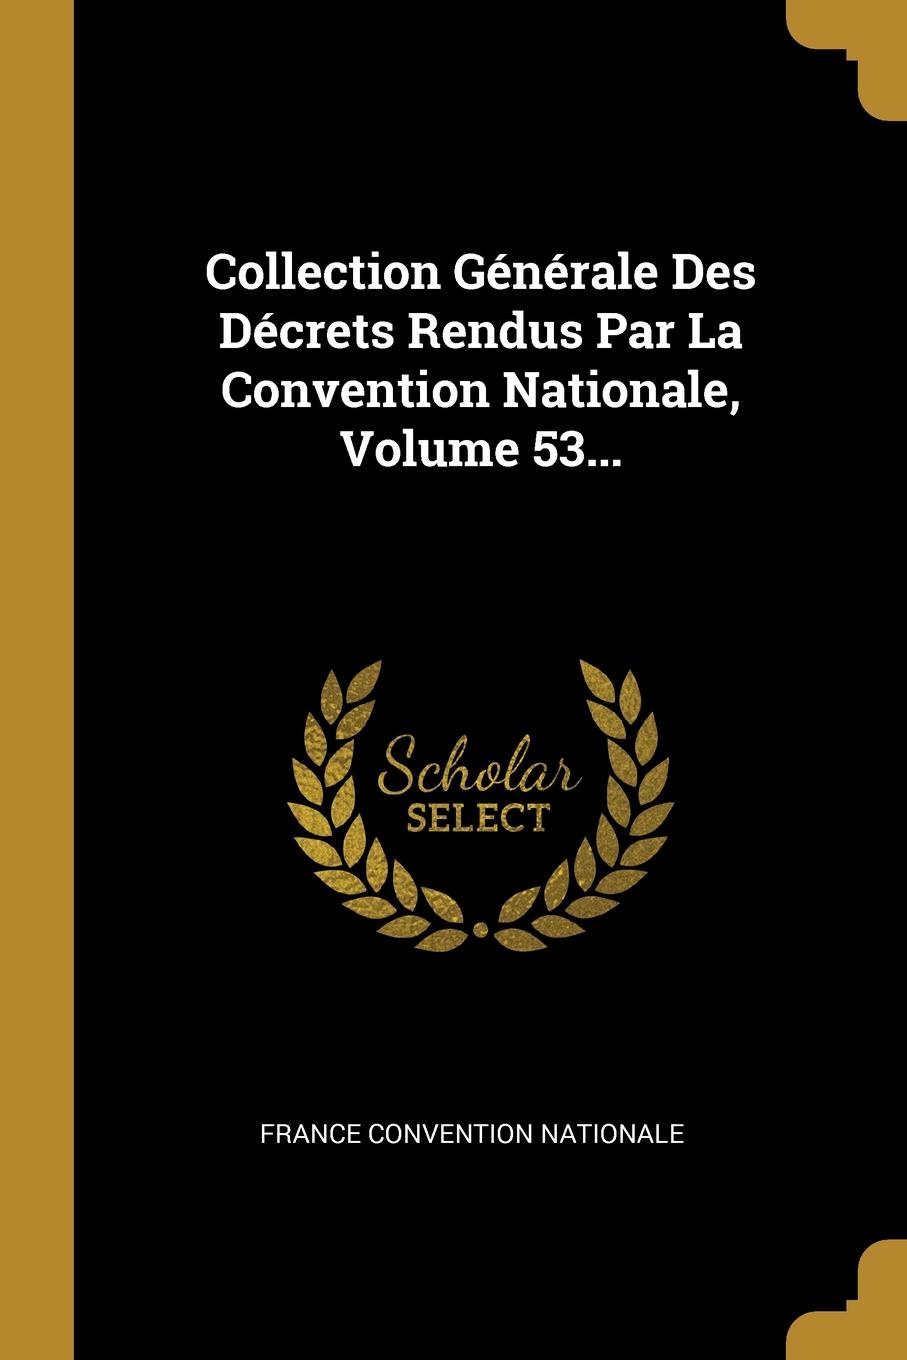 Collection Generale Des Decrets Rendus Par La Convention Nationale, Volume 53...